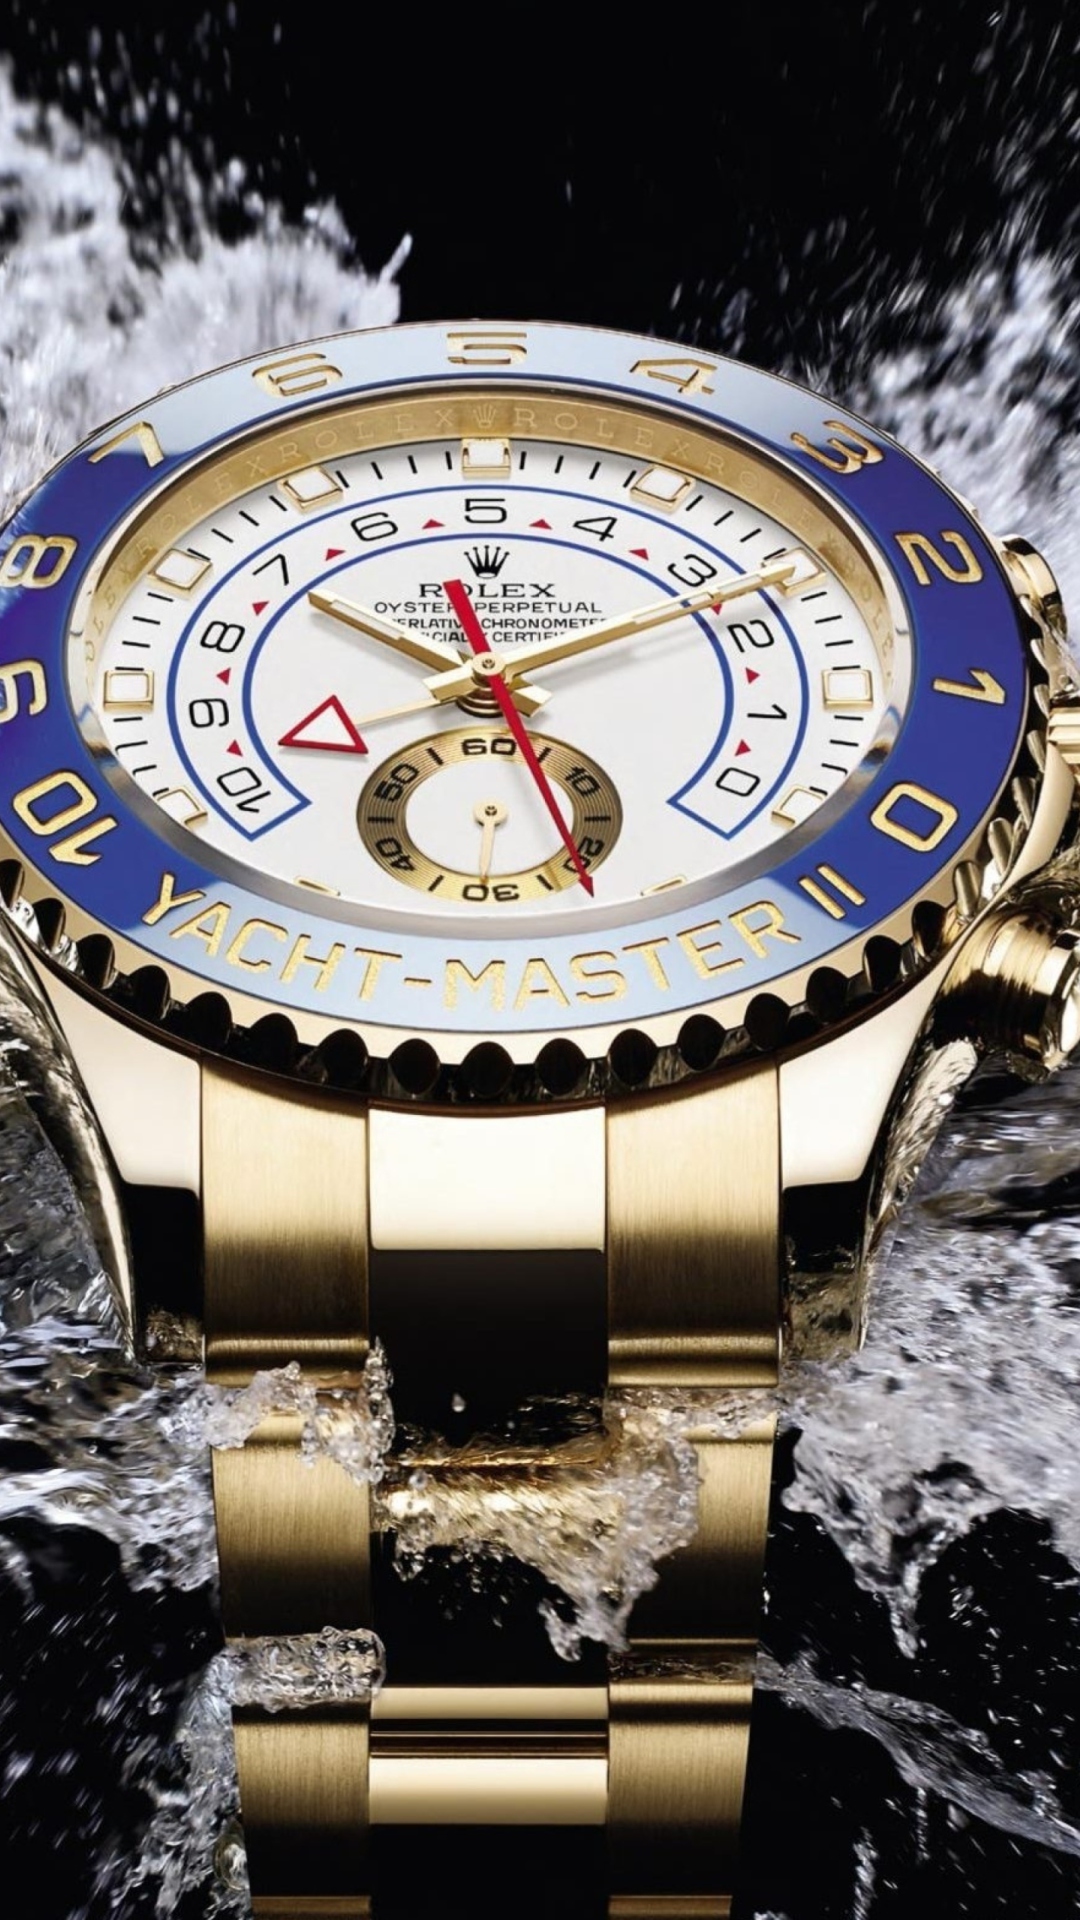 Das Rolex Yacht-Master Watches Wallpaper 1080x1920